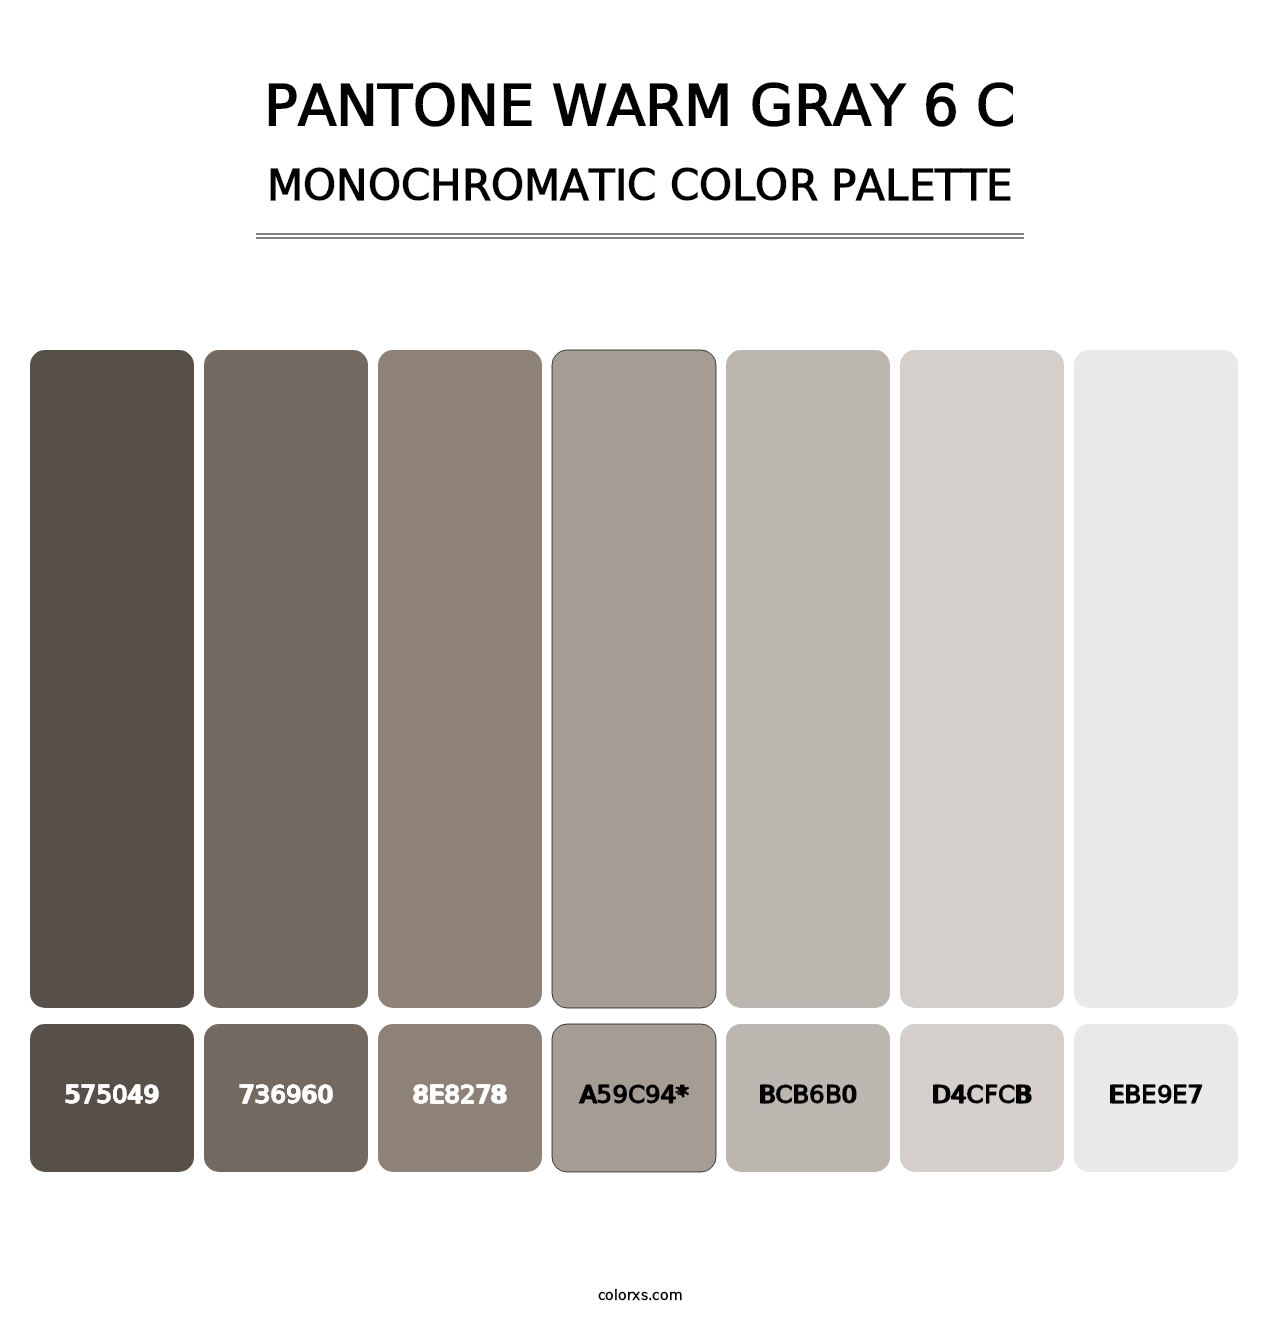 PANTONE Warm Gray 6 C - Monochromatic Color Palette